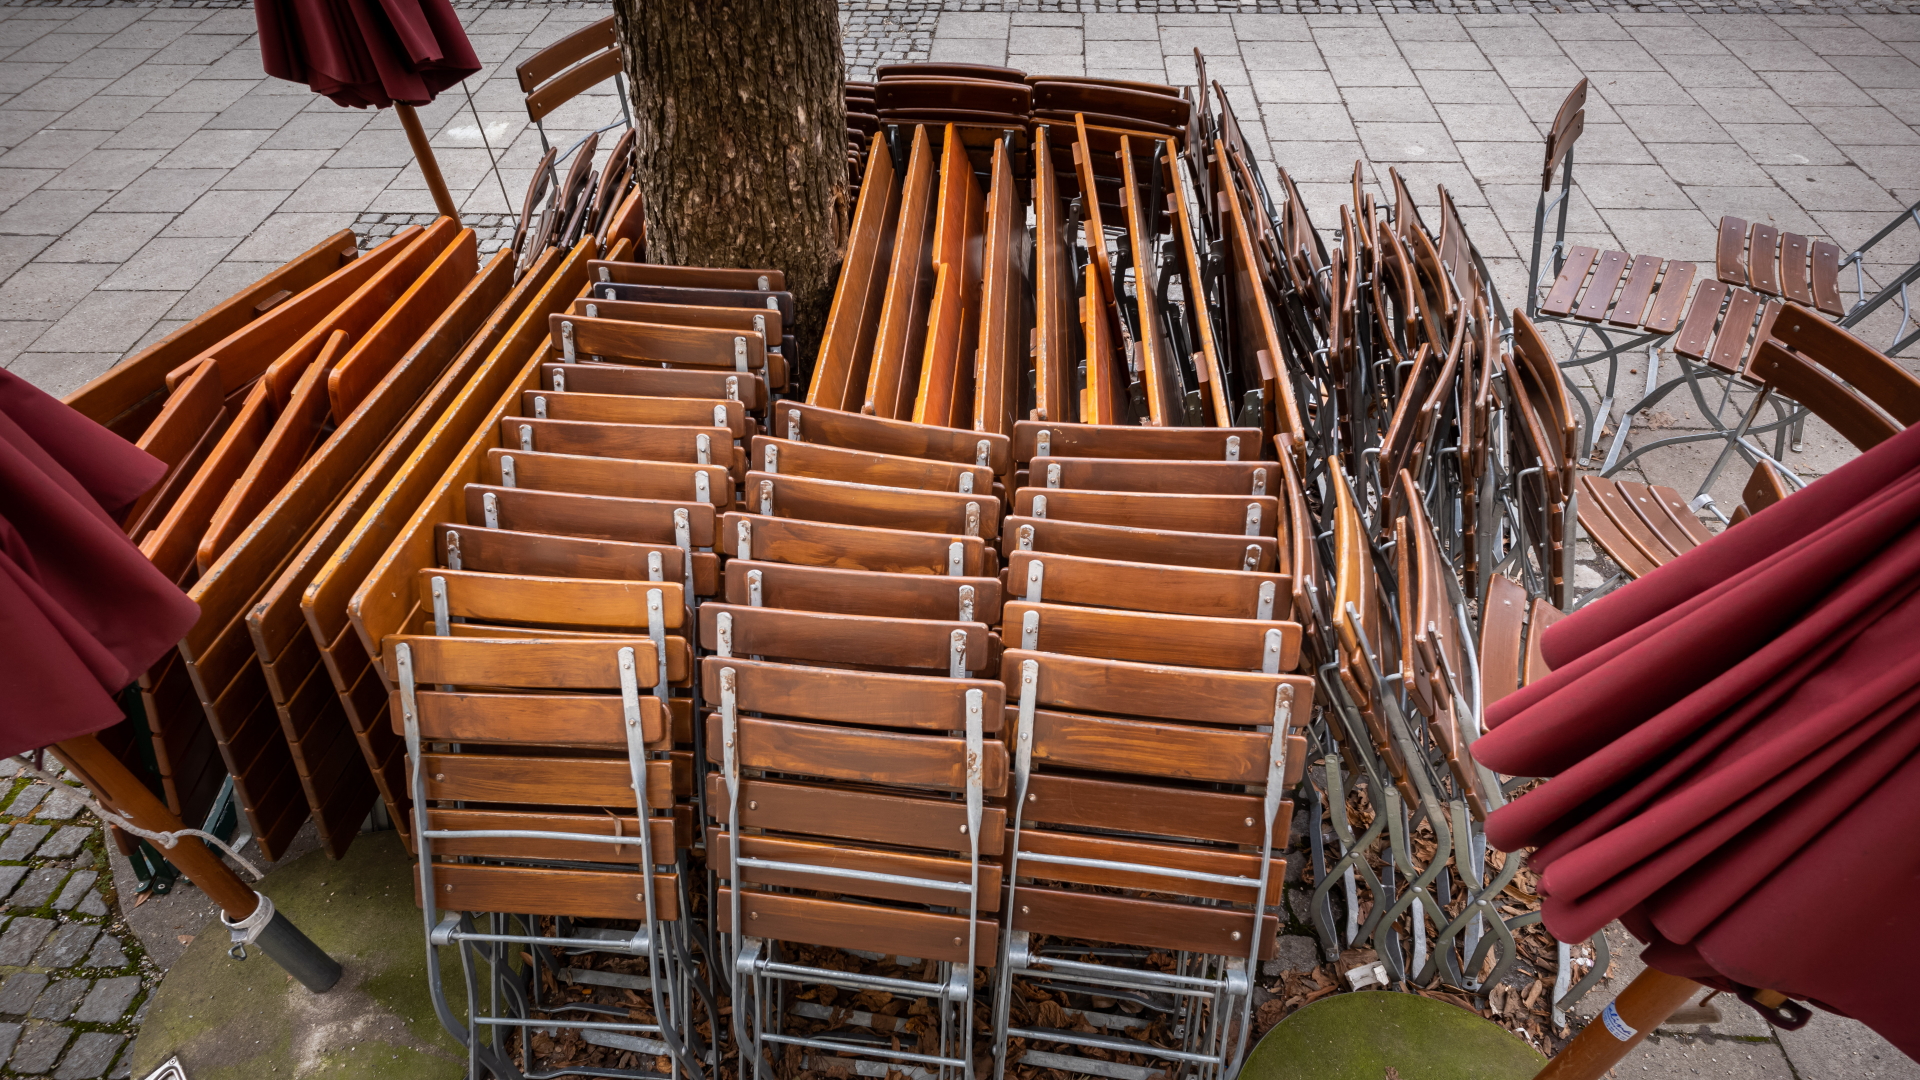  Zusammengestellte Tische und Stühle stehen vor einem geschlossenen Restaurant in München-Haidhausen.